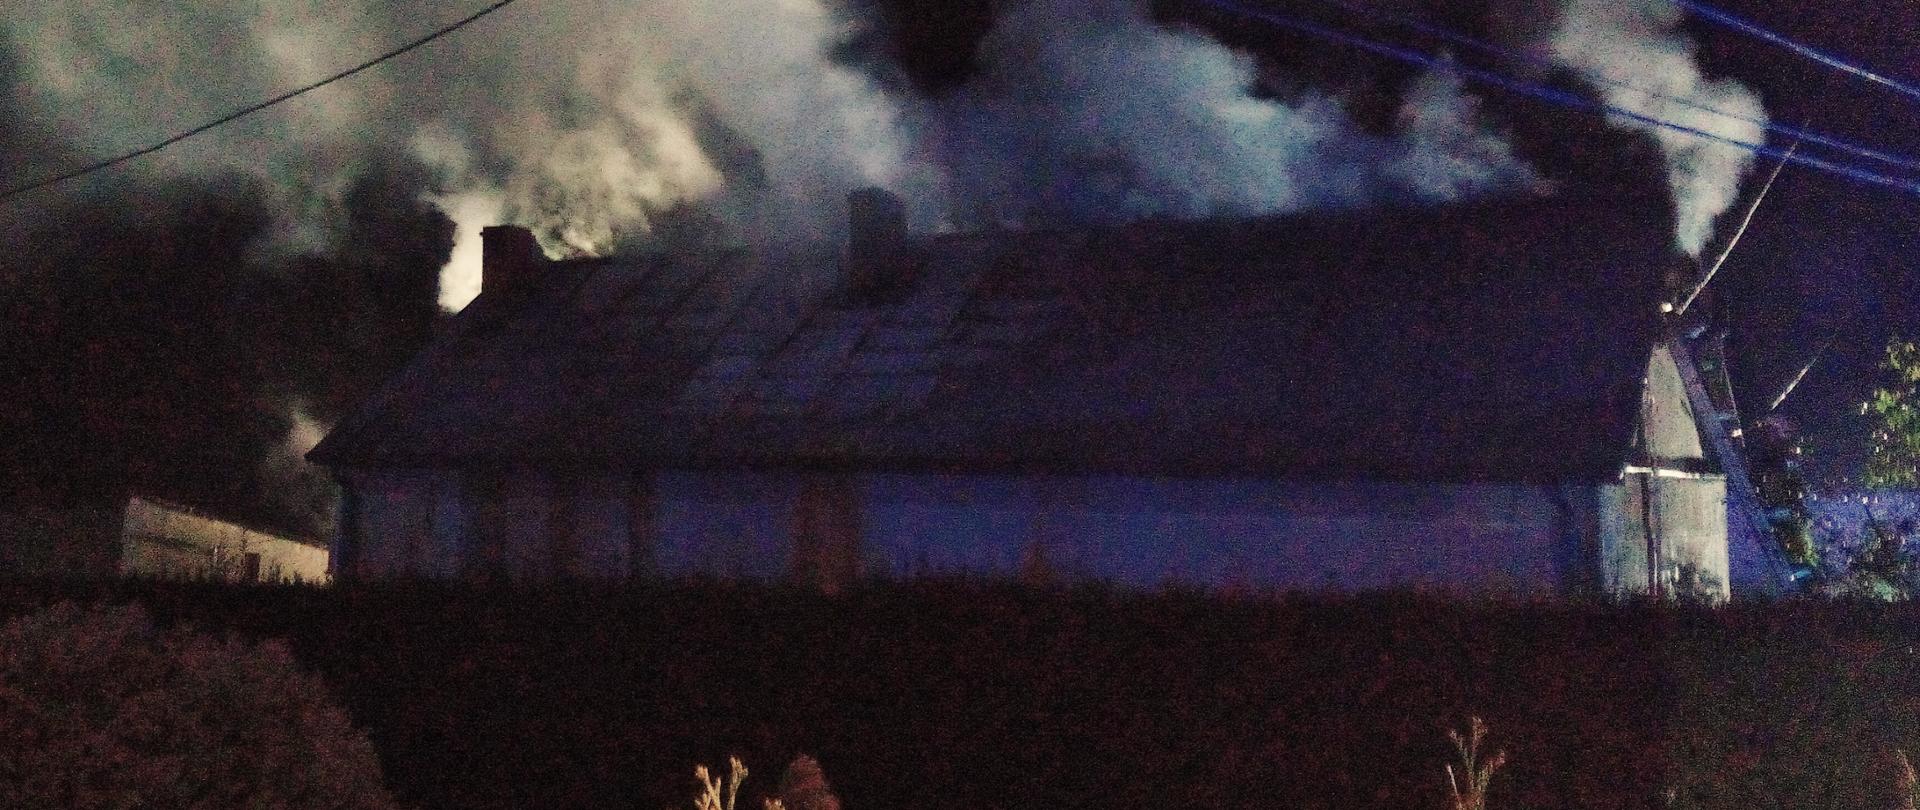 Zdjęcie przedstawia budynek mieszkalny gdzie wybuchł pożar. Widać dym i parę wodną unoszącą się nad dachem.